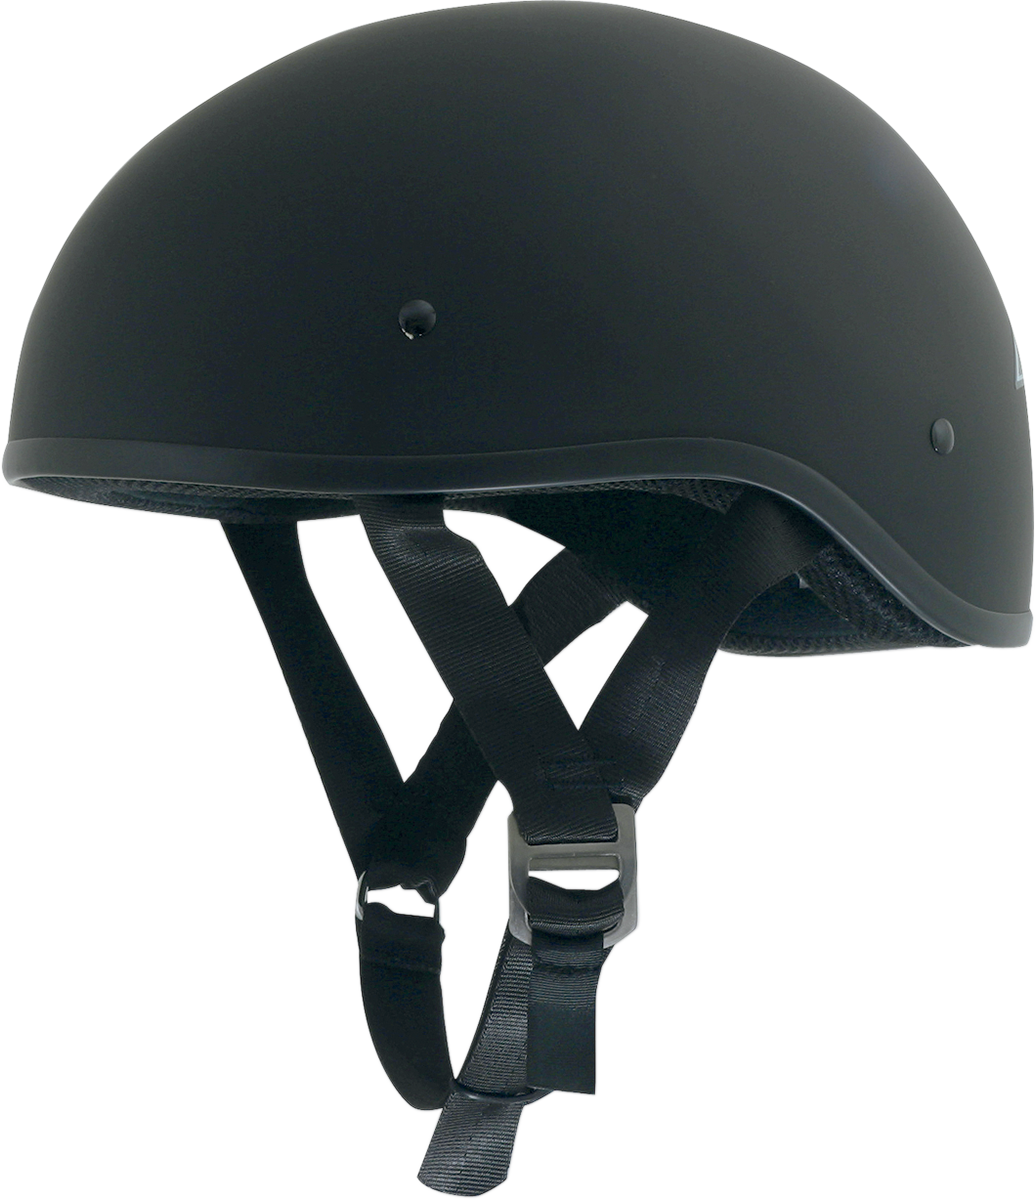 AFX FX-200 Slick Helmet - Matte Black - Large 0103-0925